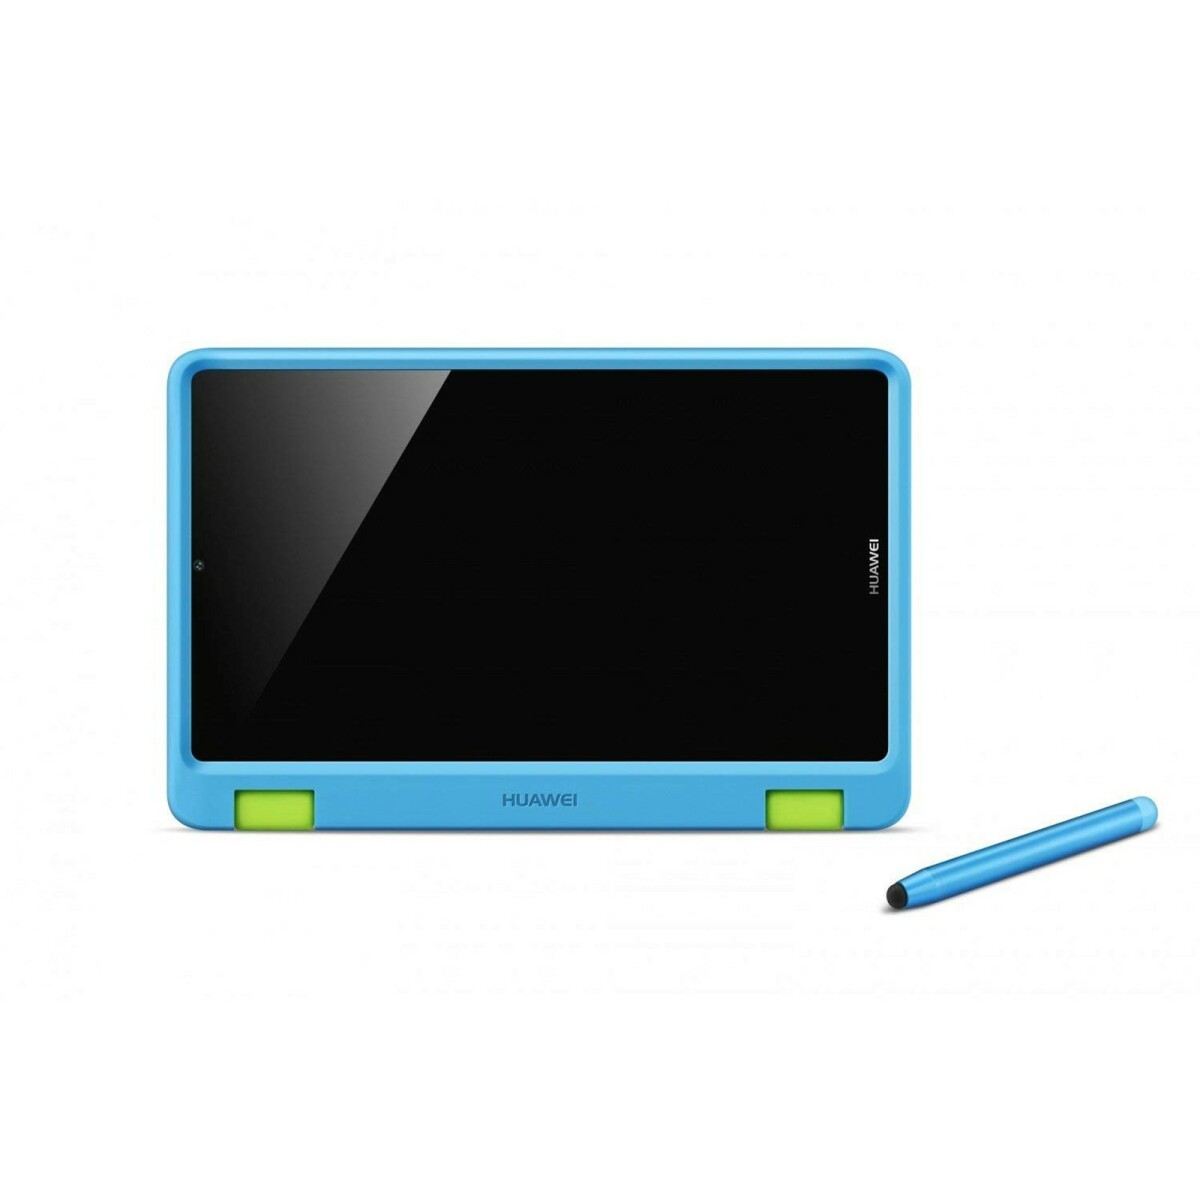 Housse, étui tablette Huawei coque Smart Cover Case original pour Huawei MediaPad T3 7.0 couleur bleu/vert